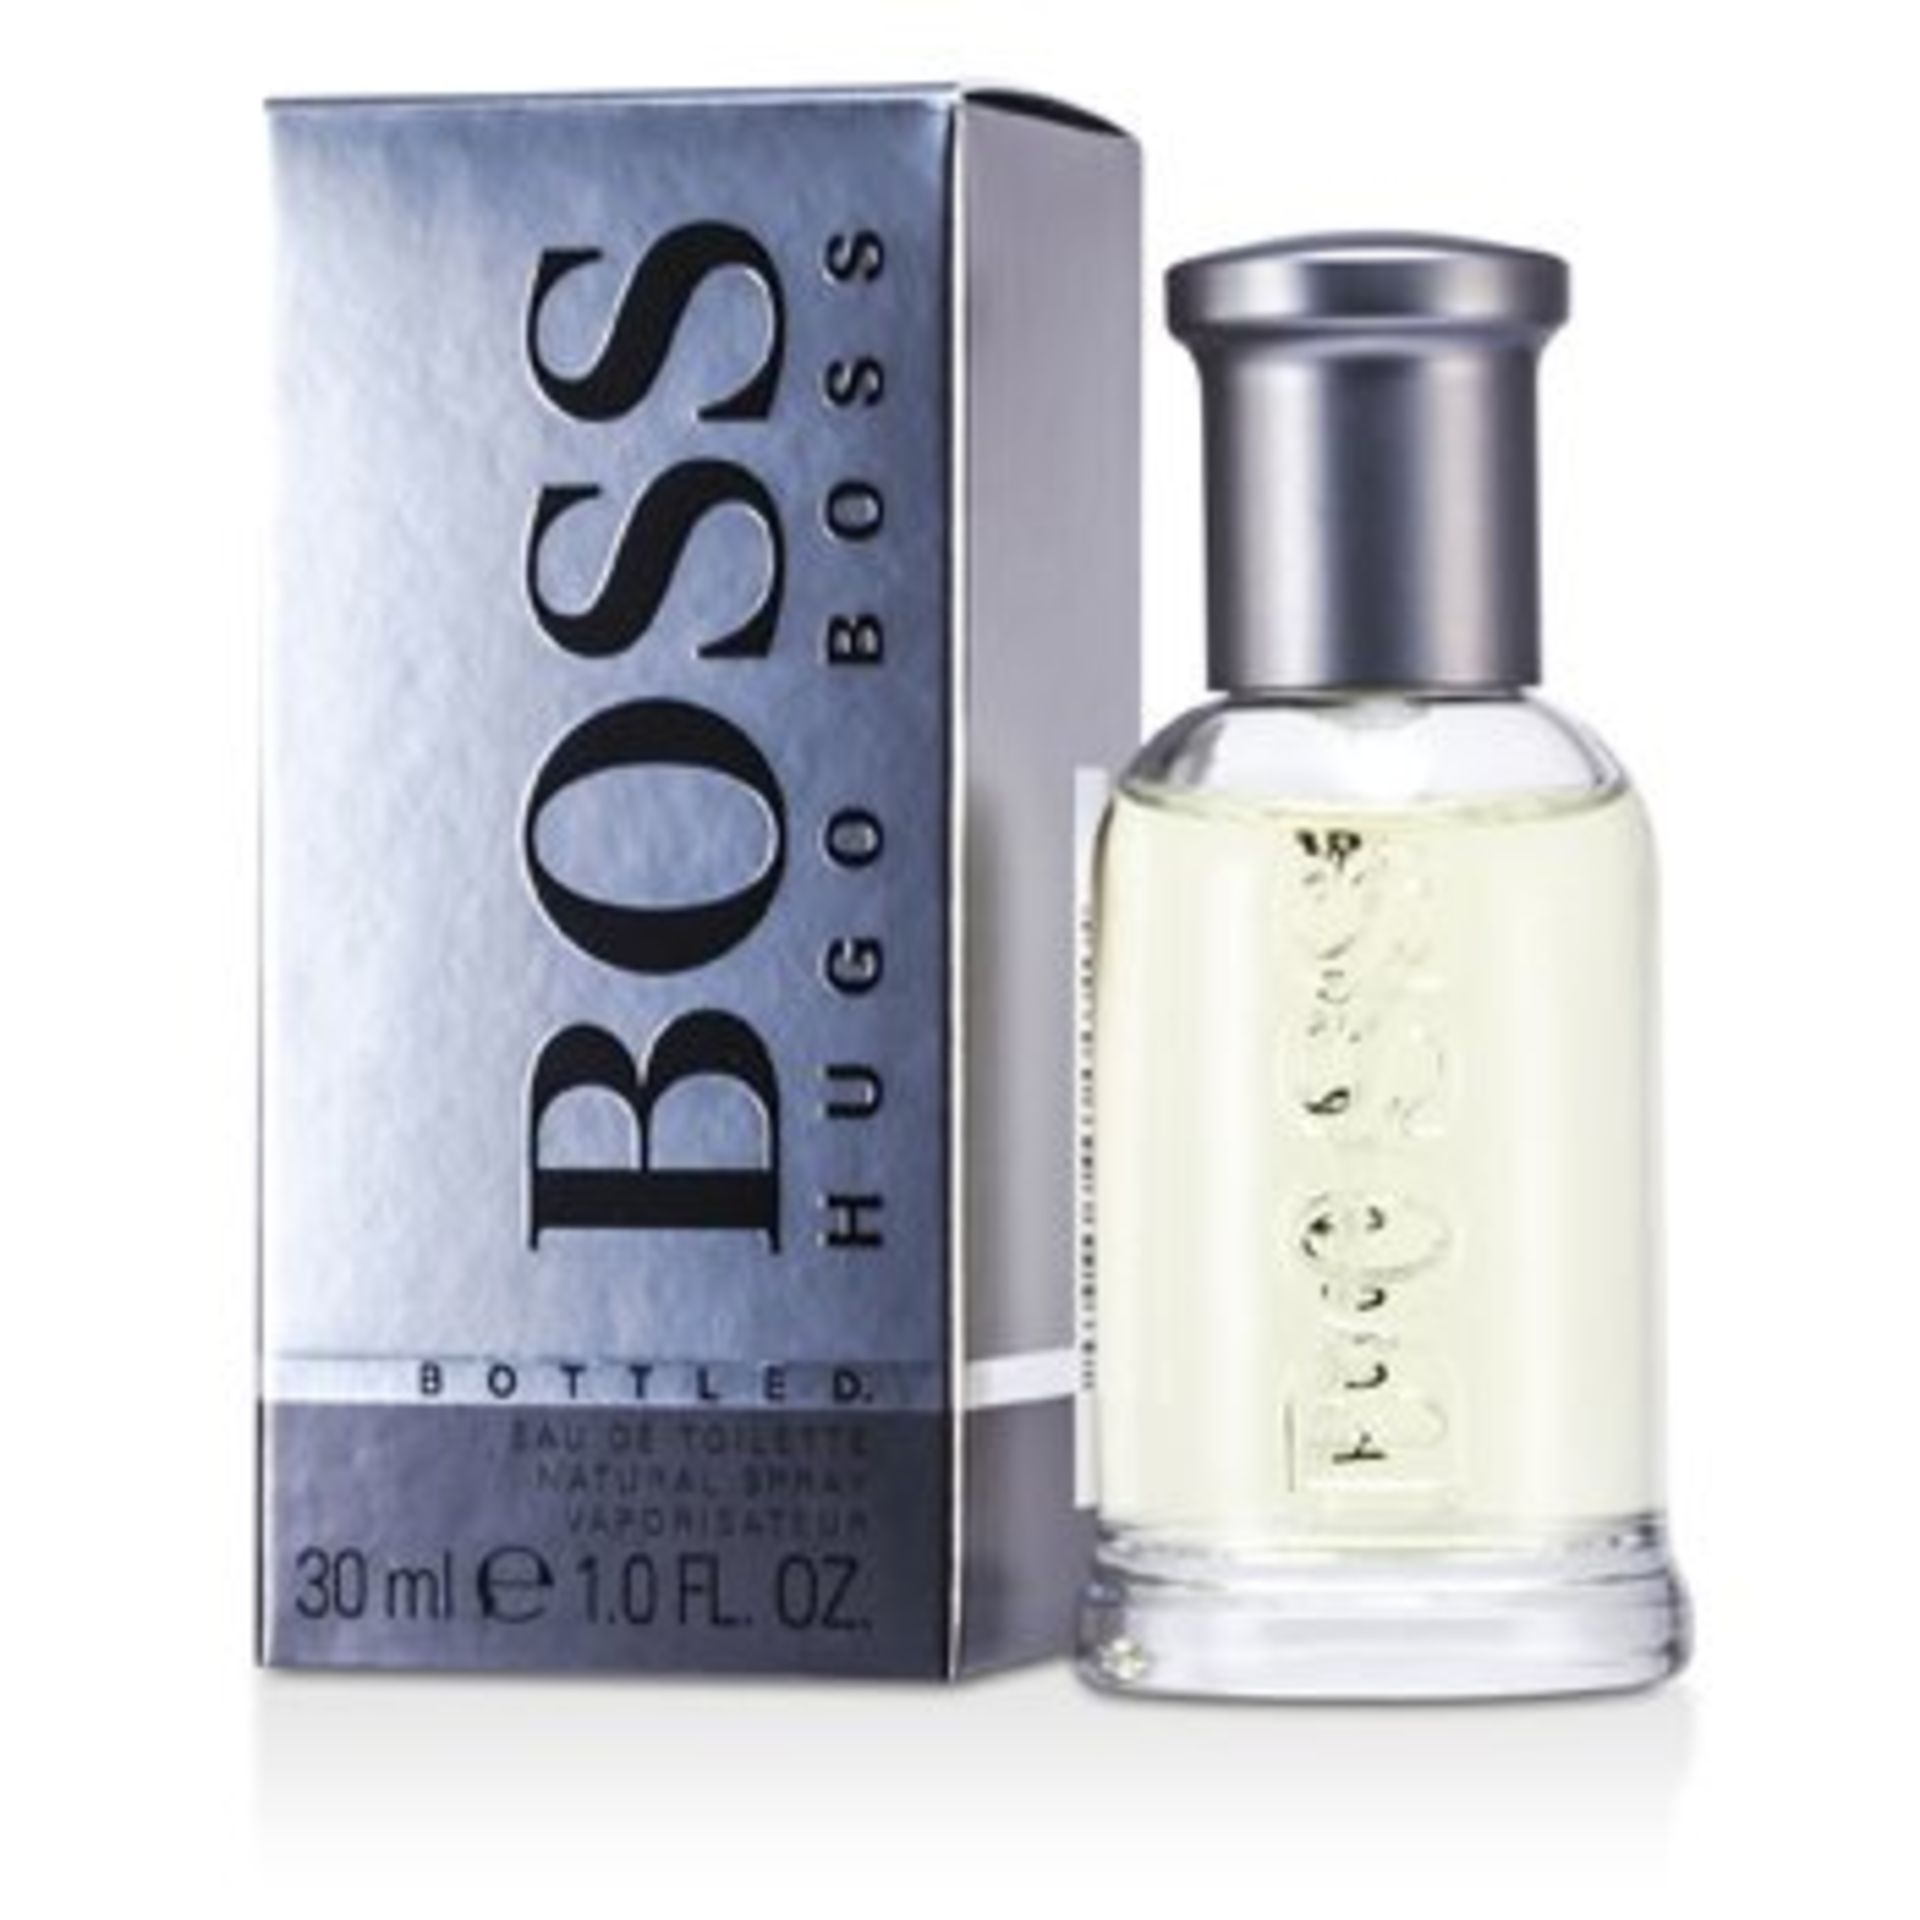 V Brand New Hugo Boss Bottled Grey 30ml EDT Spray